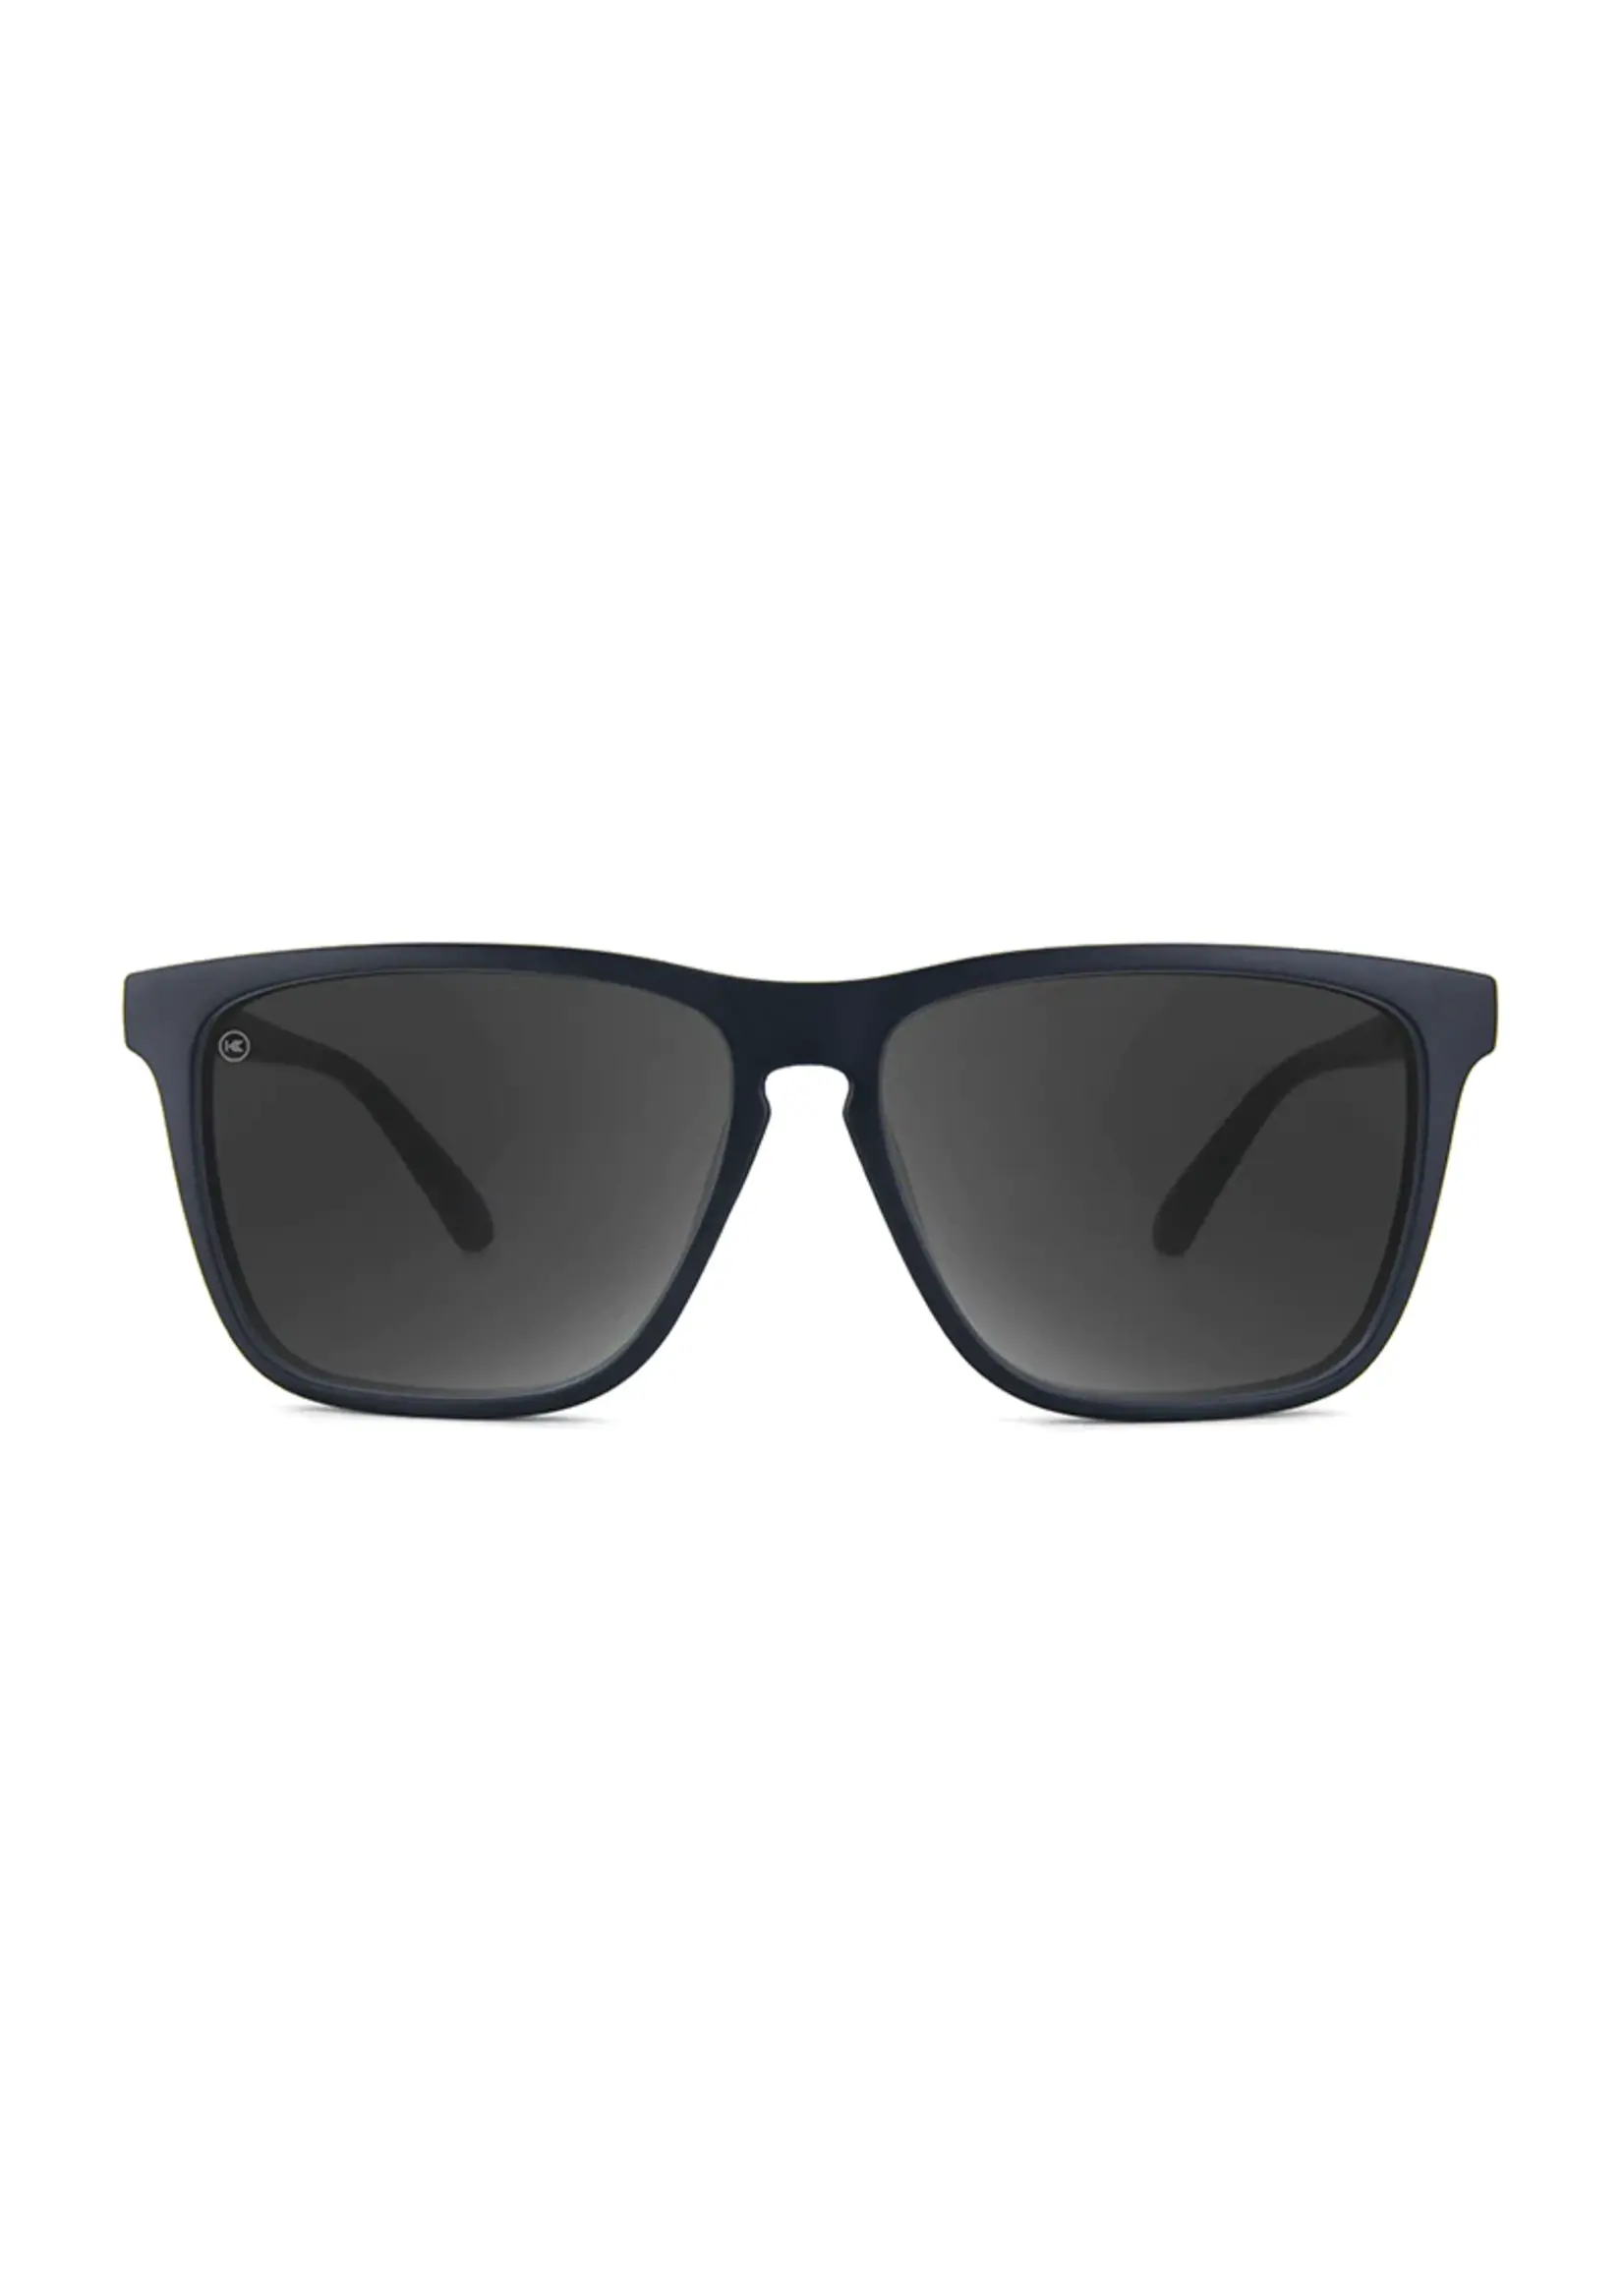 Knockaround Black On Black/Smoke Fast Lanes Sunglasses